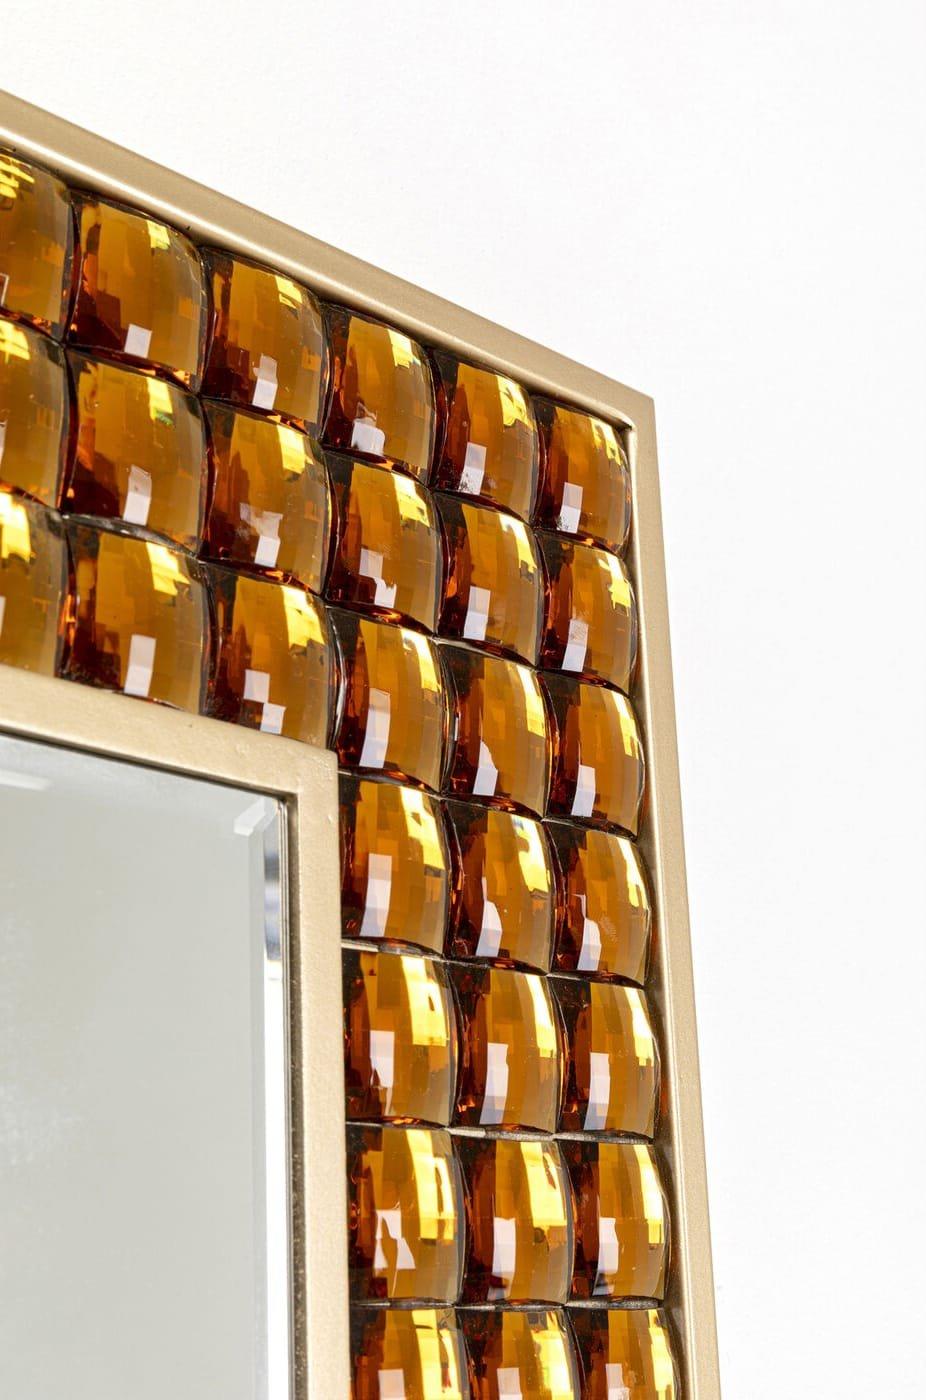 KARE Design Specchio da parete Cristalli ottone 80x180  